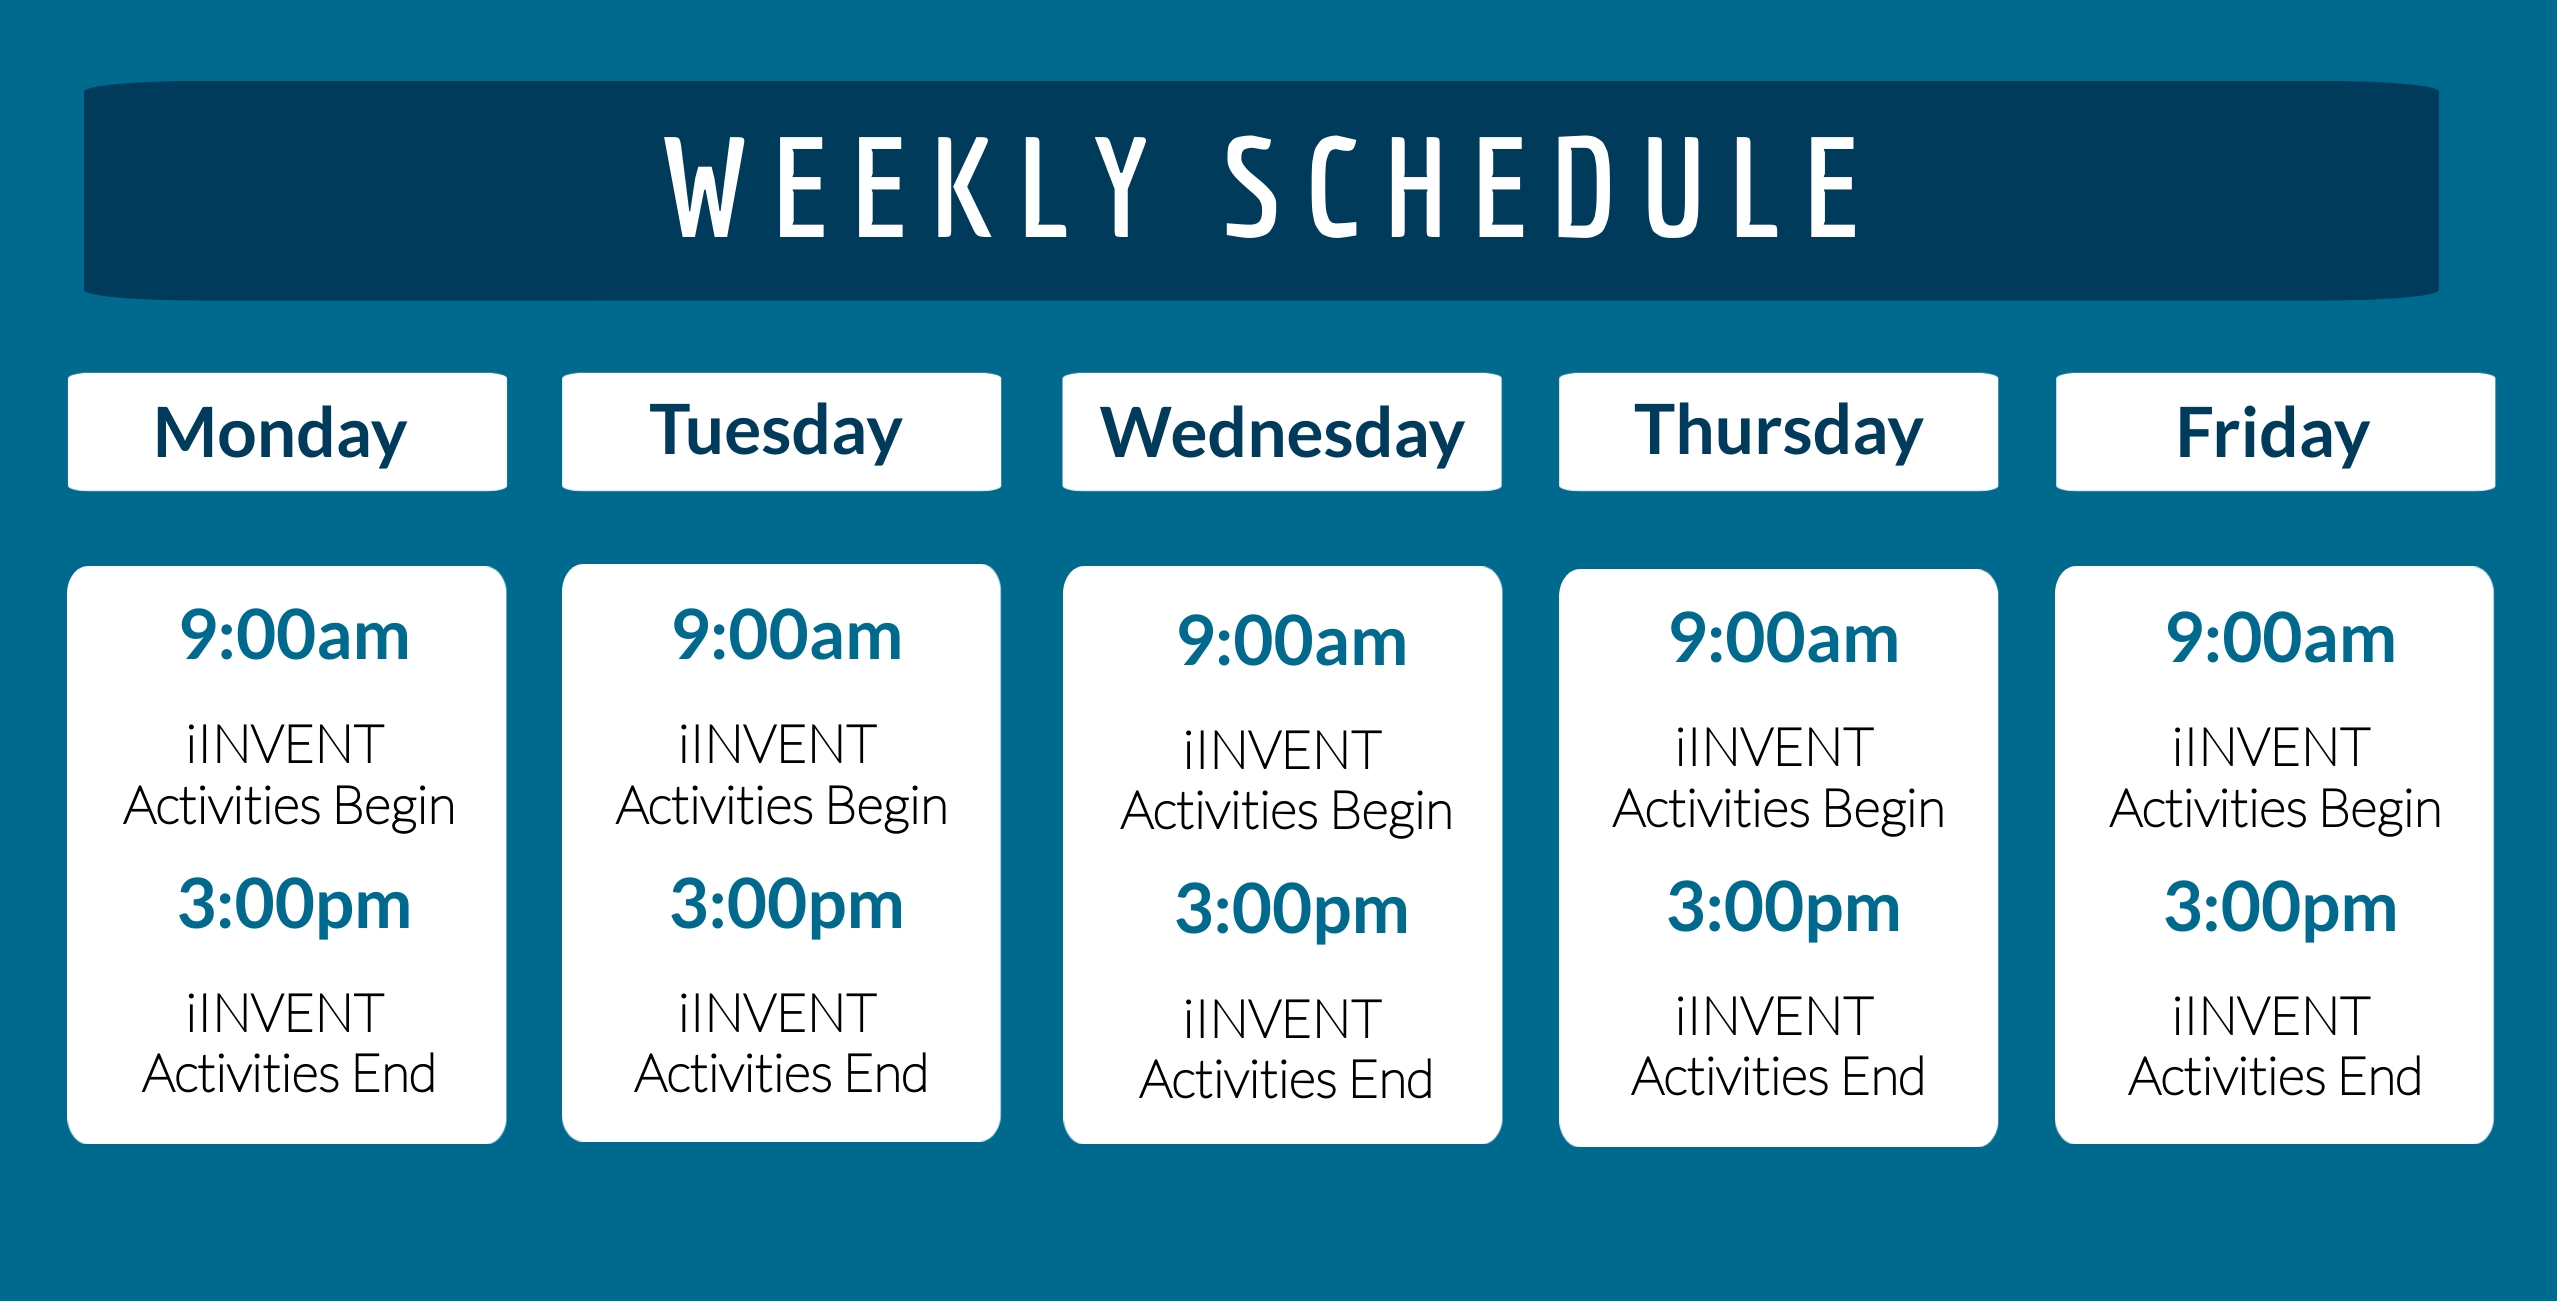 Weekly Schedule: Monday-Friday: 9:00am iINVENT Activities begin, 3:00pm iINVENT activities end